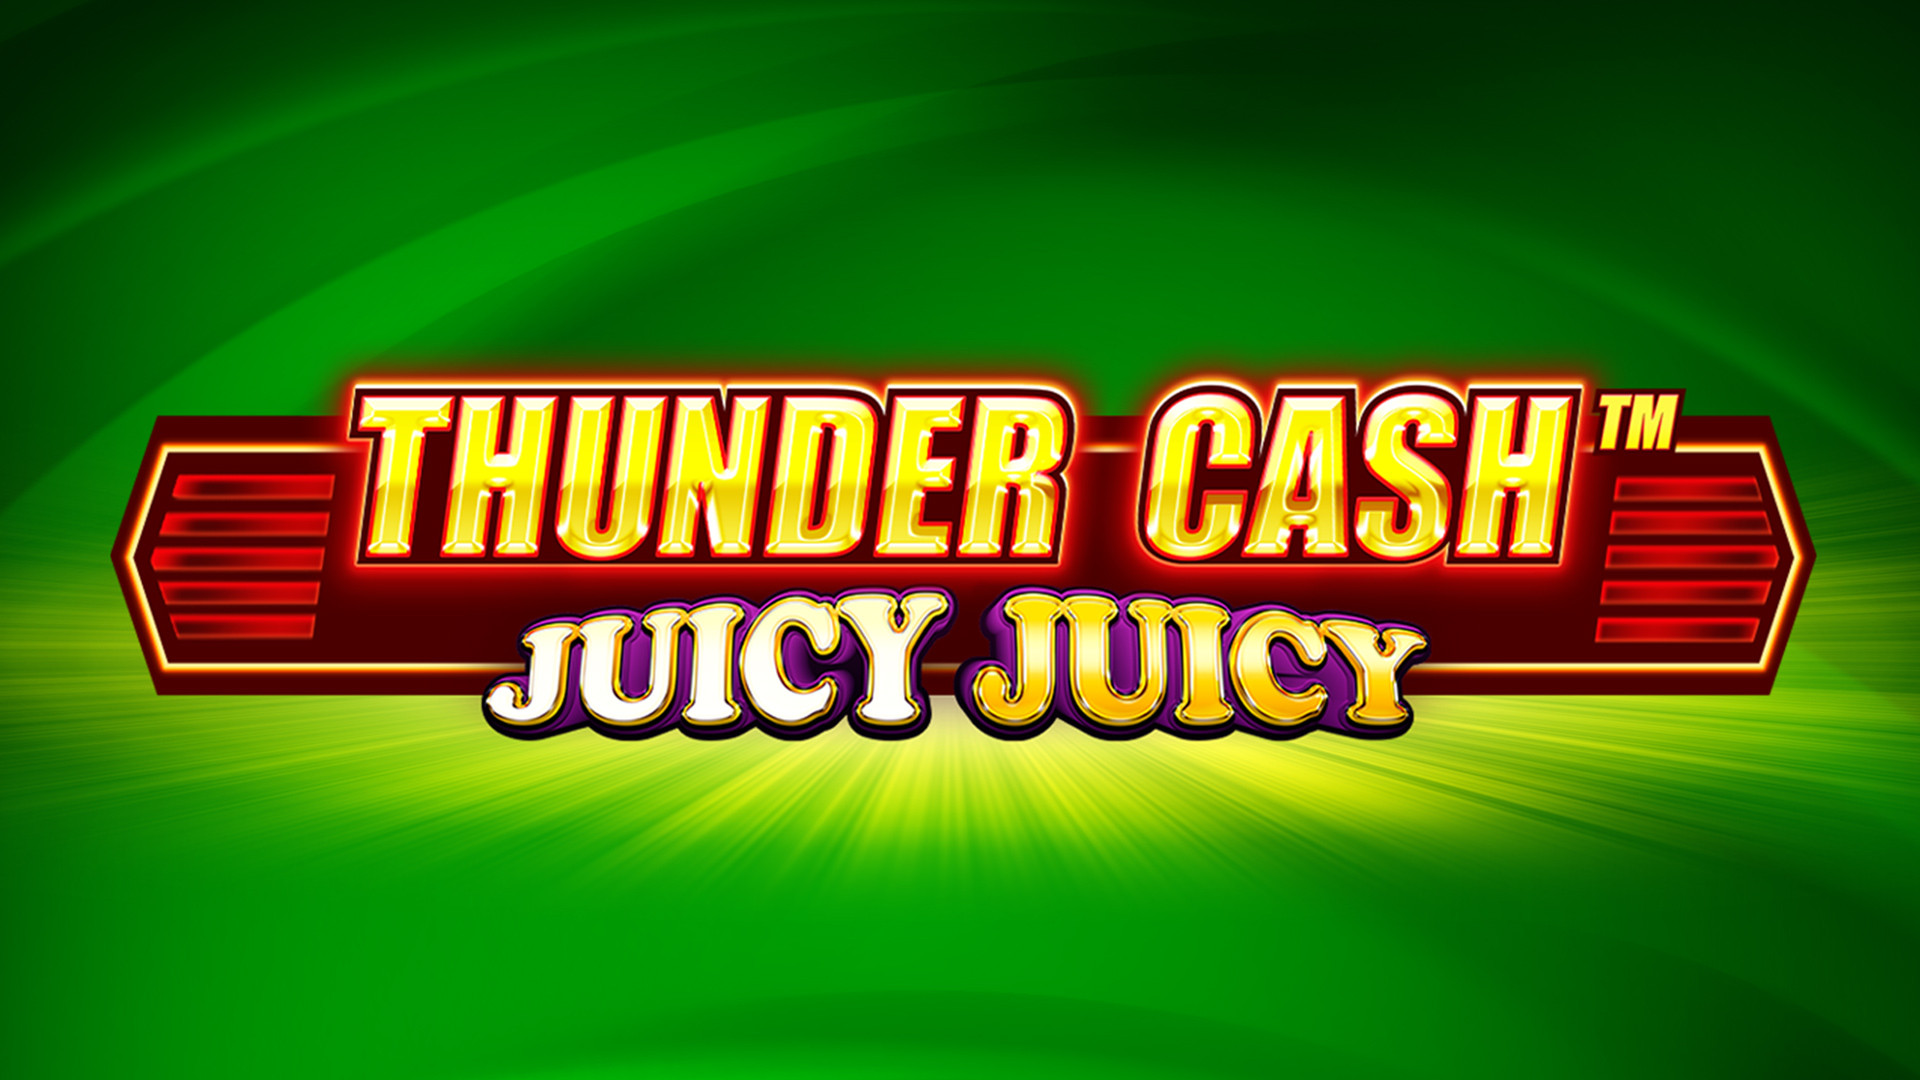 Thunder Cash - Juicy Juicy